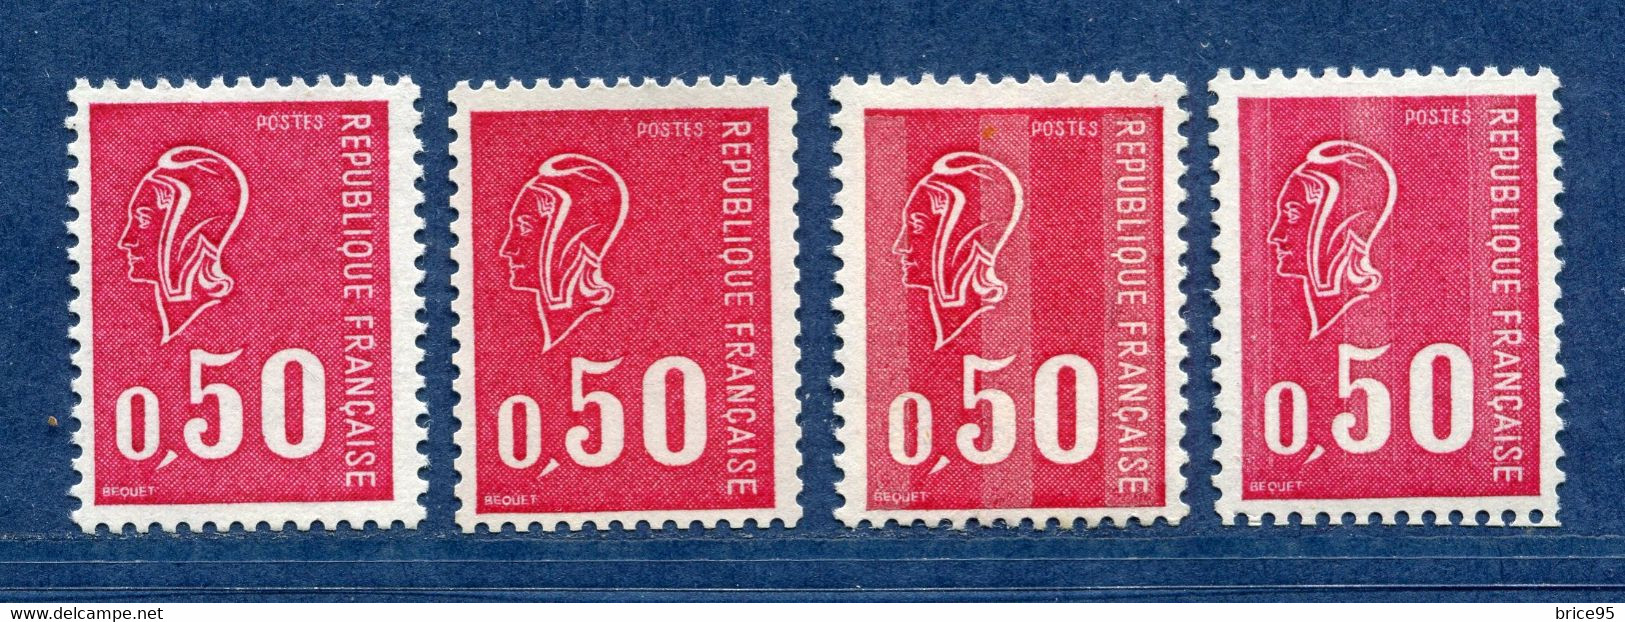 ⭐ France - Variété - YT N° 1664 B - Numéro Rouge - Couleurs - Pétouilles - Neuf Sans Charnière - 1971 ⭐ - Unused Stamps